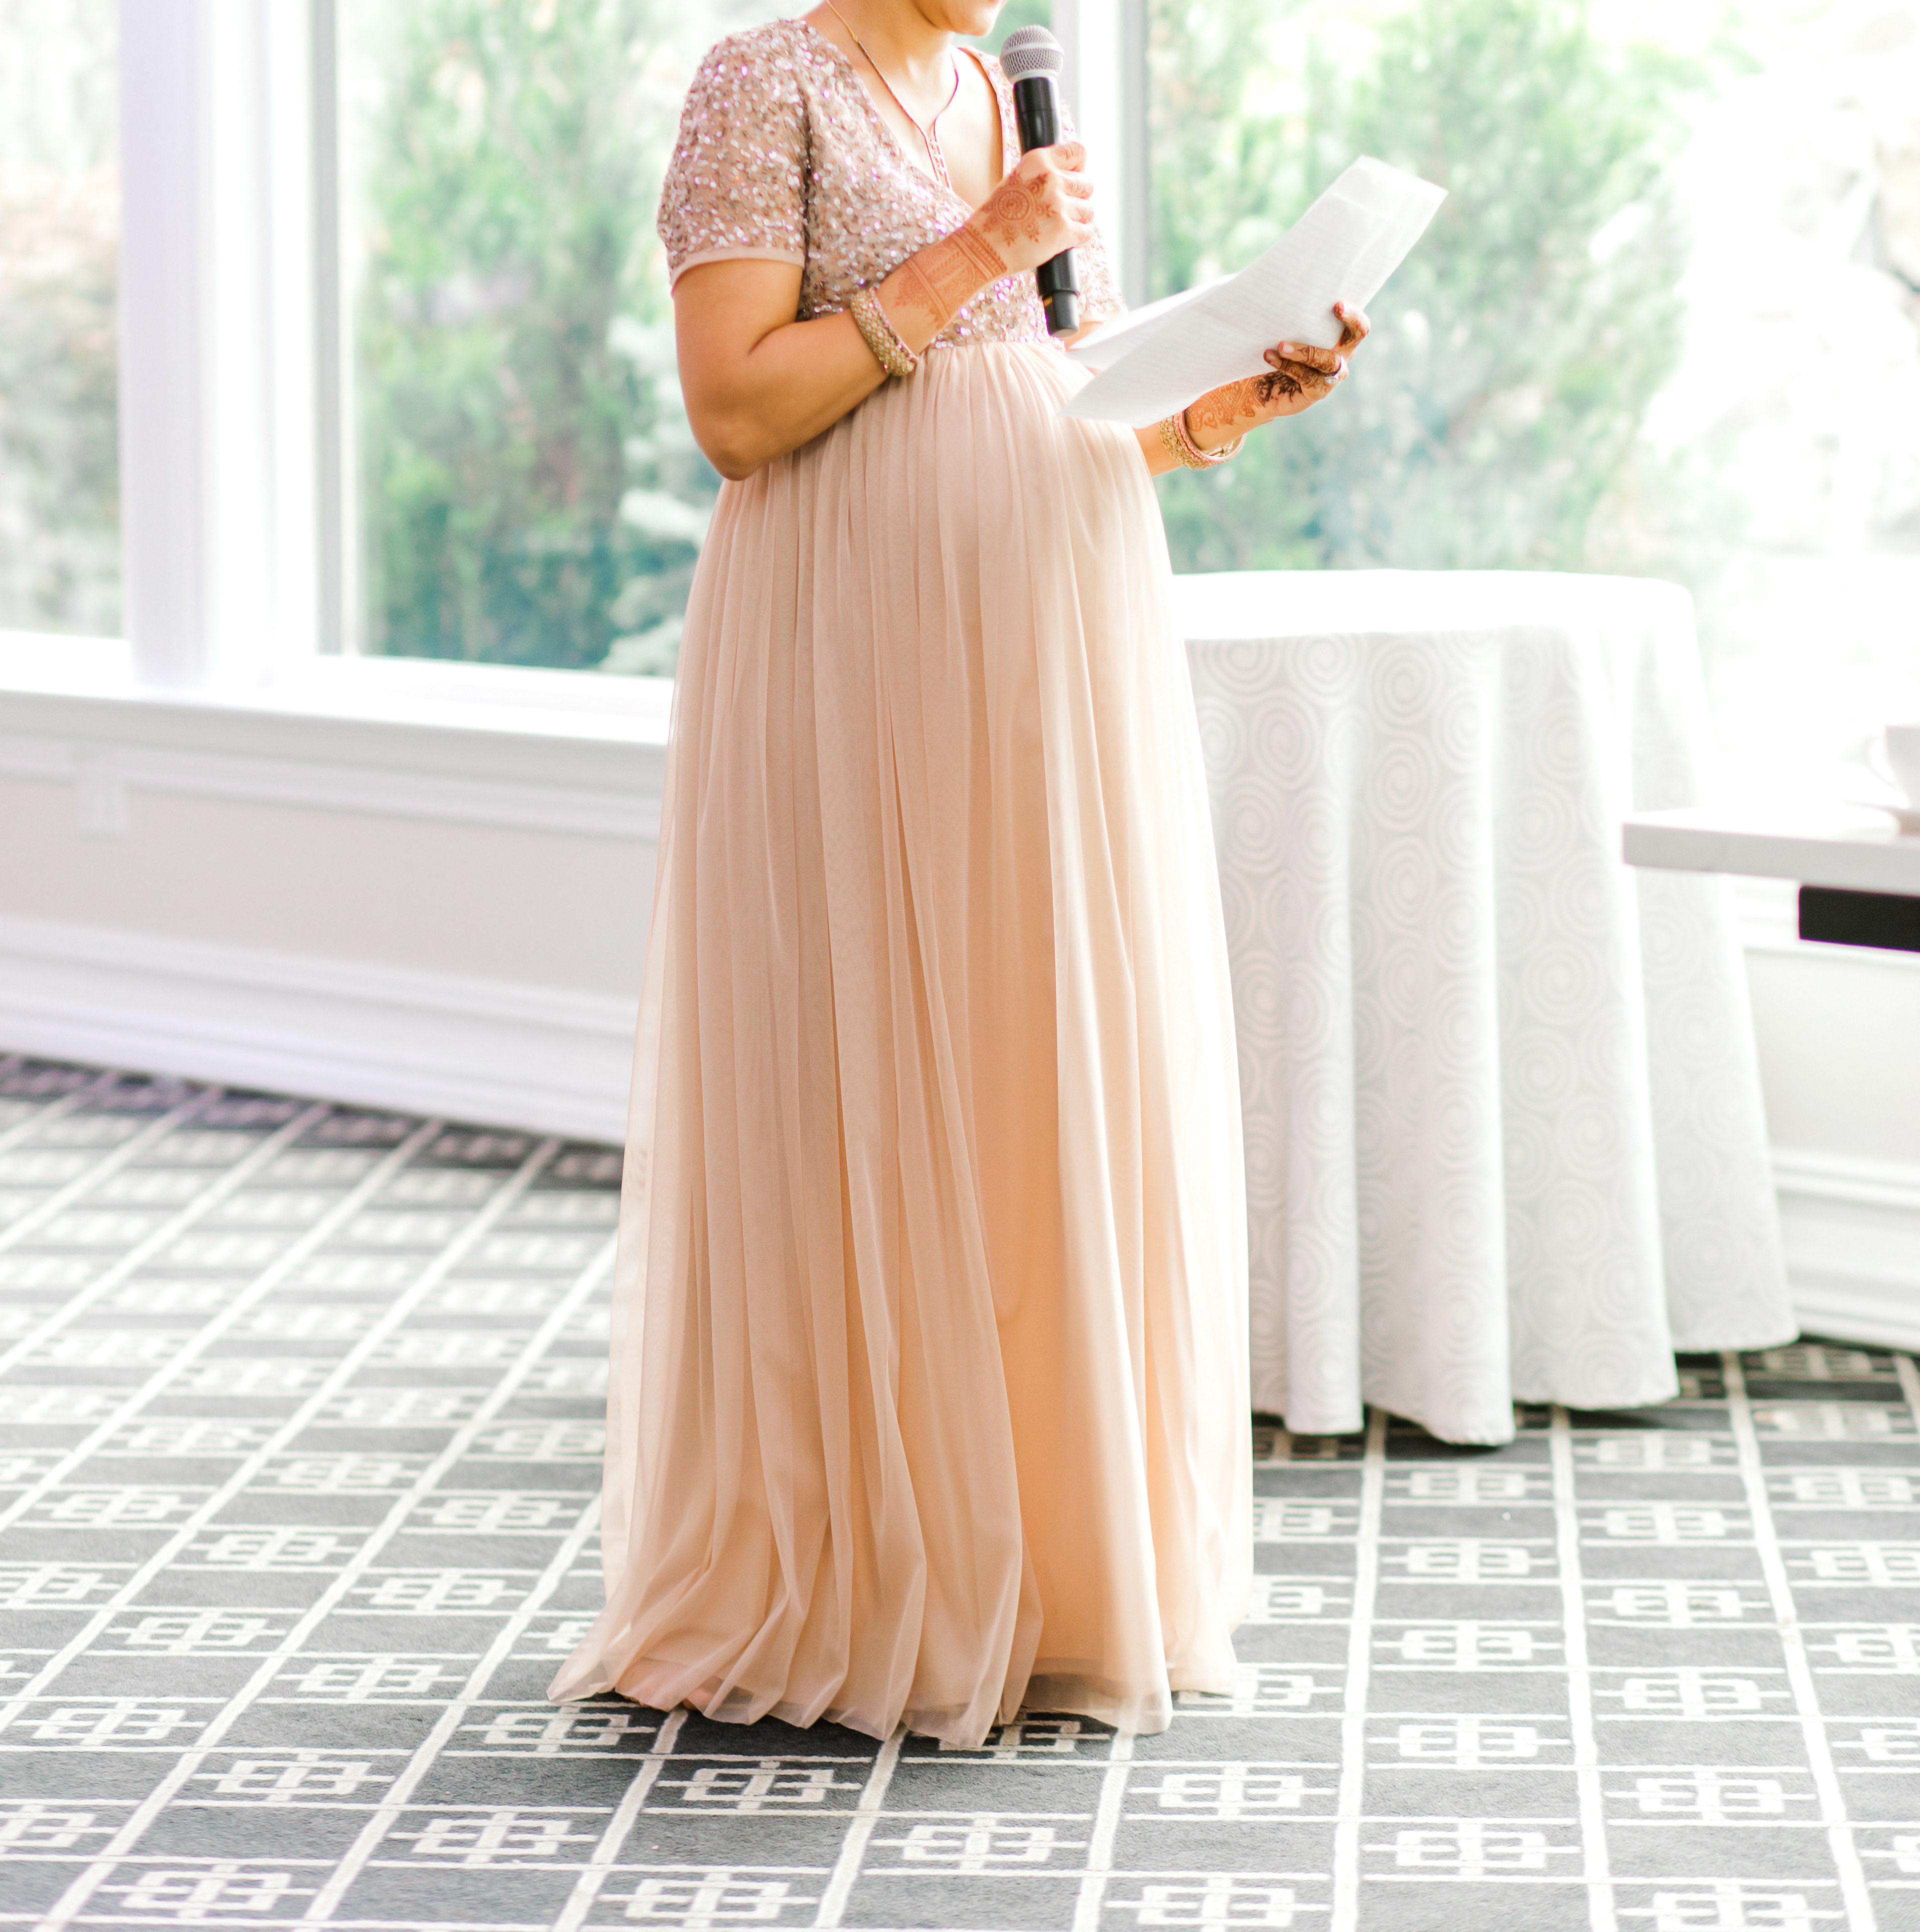 Une photo qui montre une invitée prononçant un discours à l'occasion d'une fête | Source : Shutterstock/AliAshraf